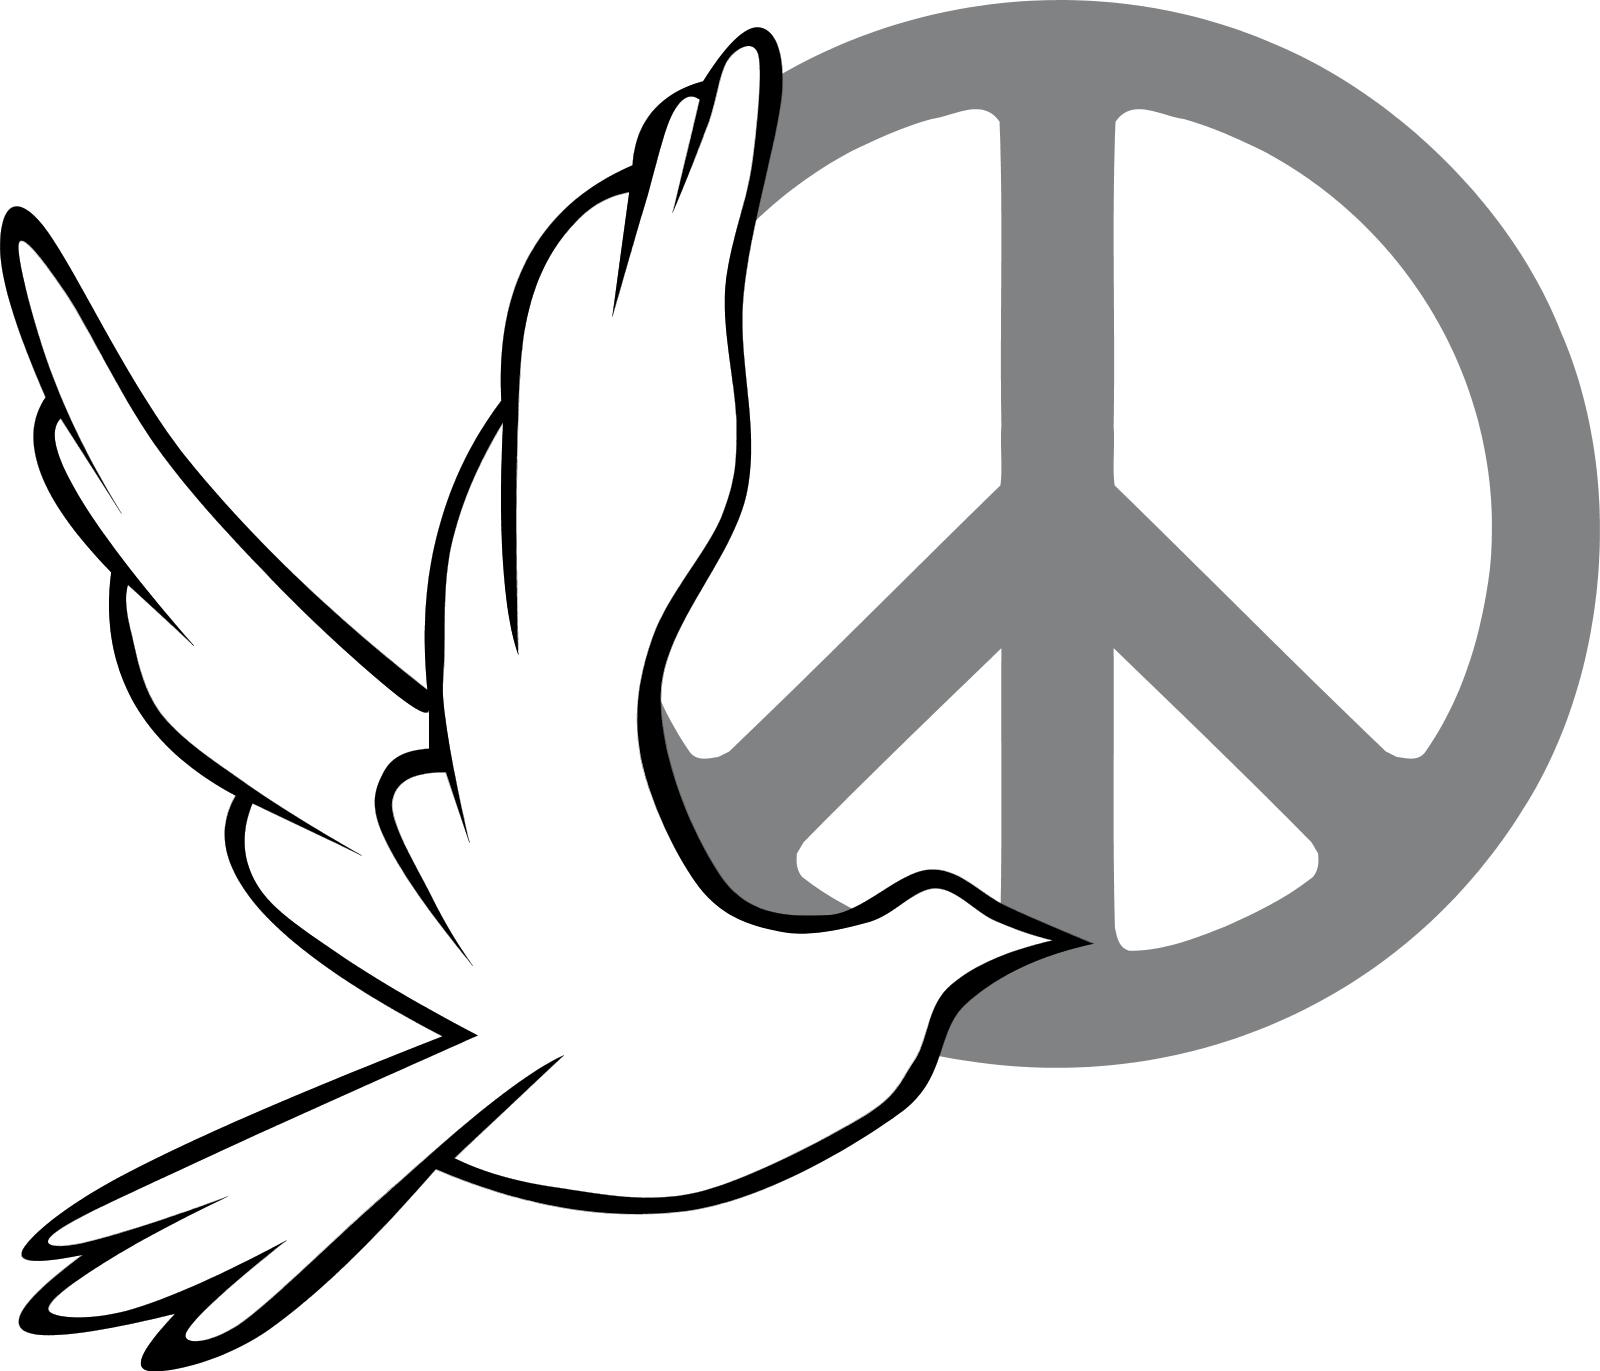 dove-peace-symbol-clipart-best